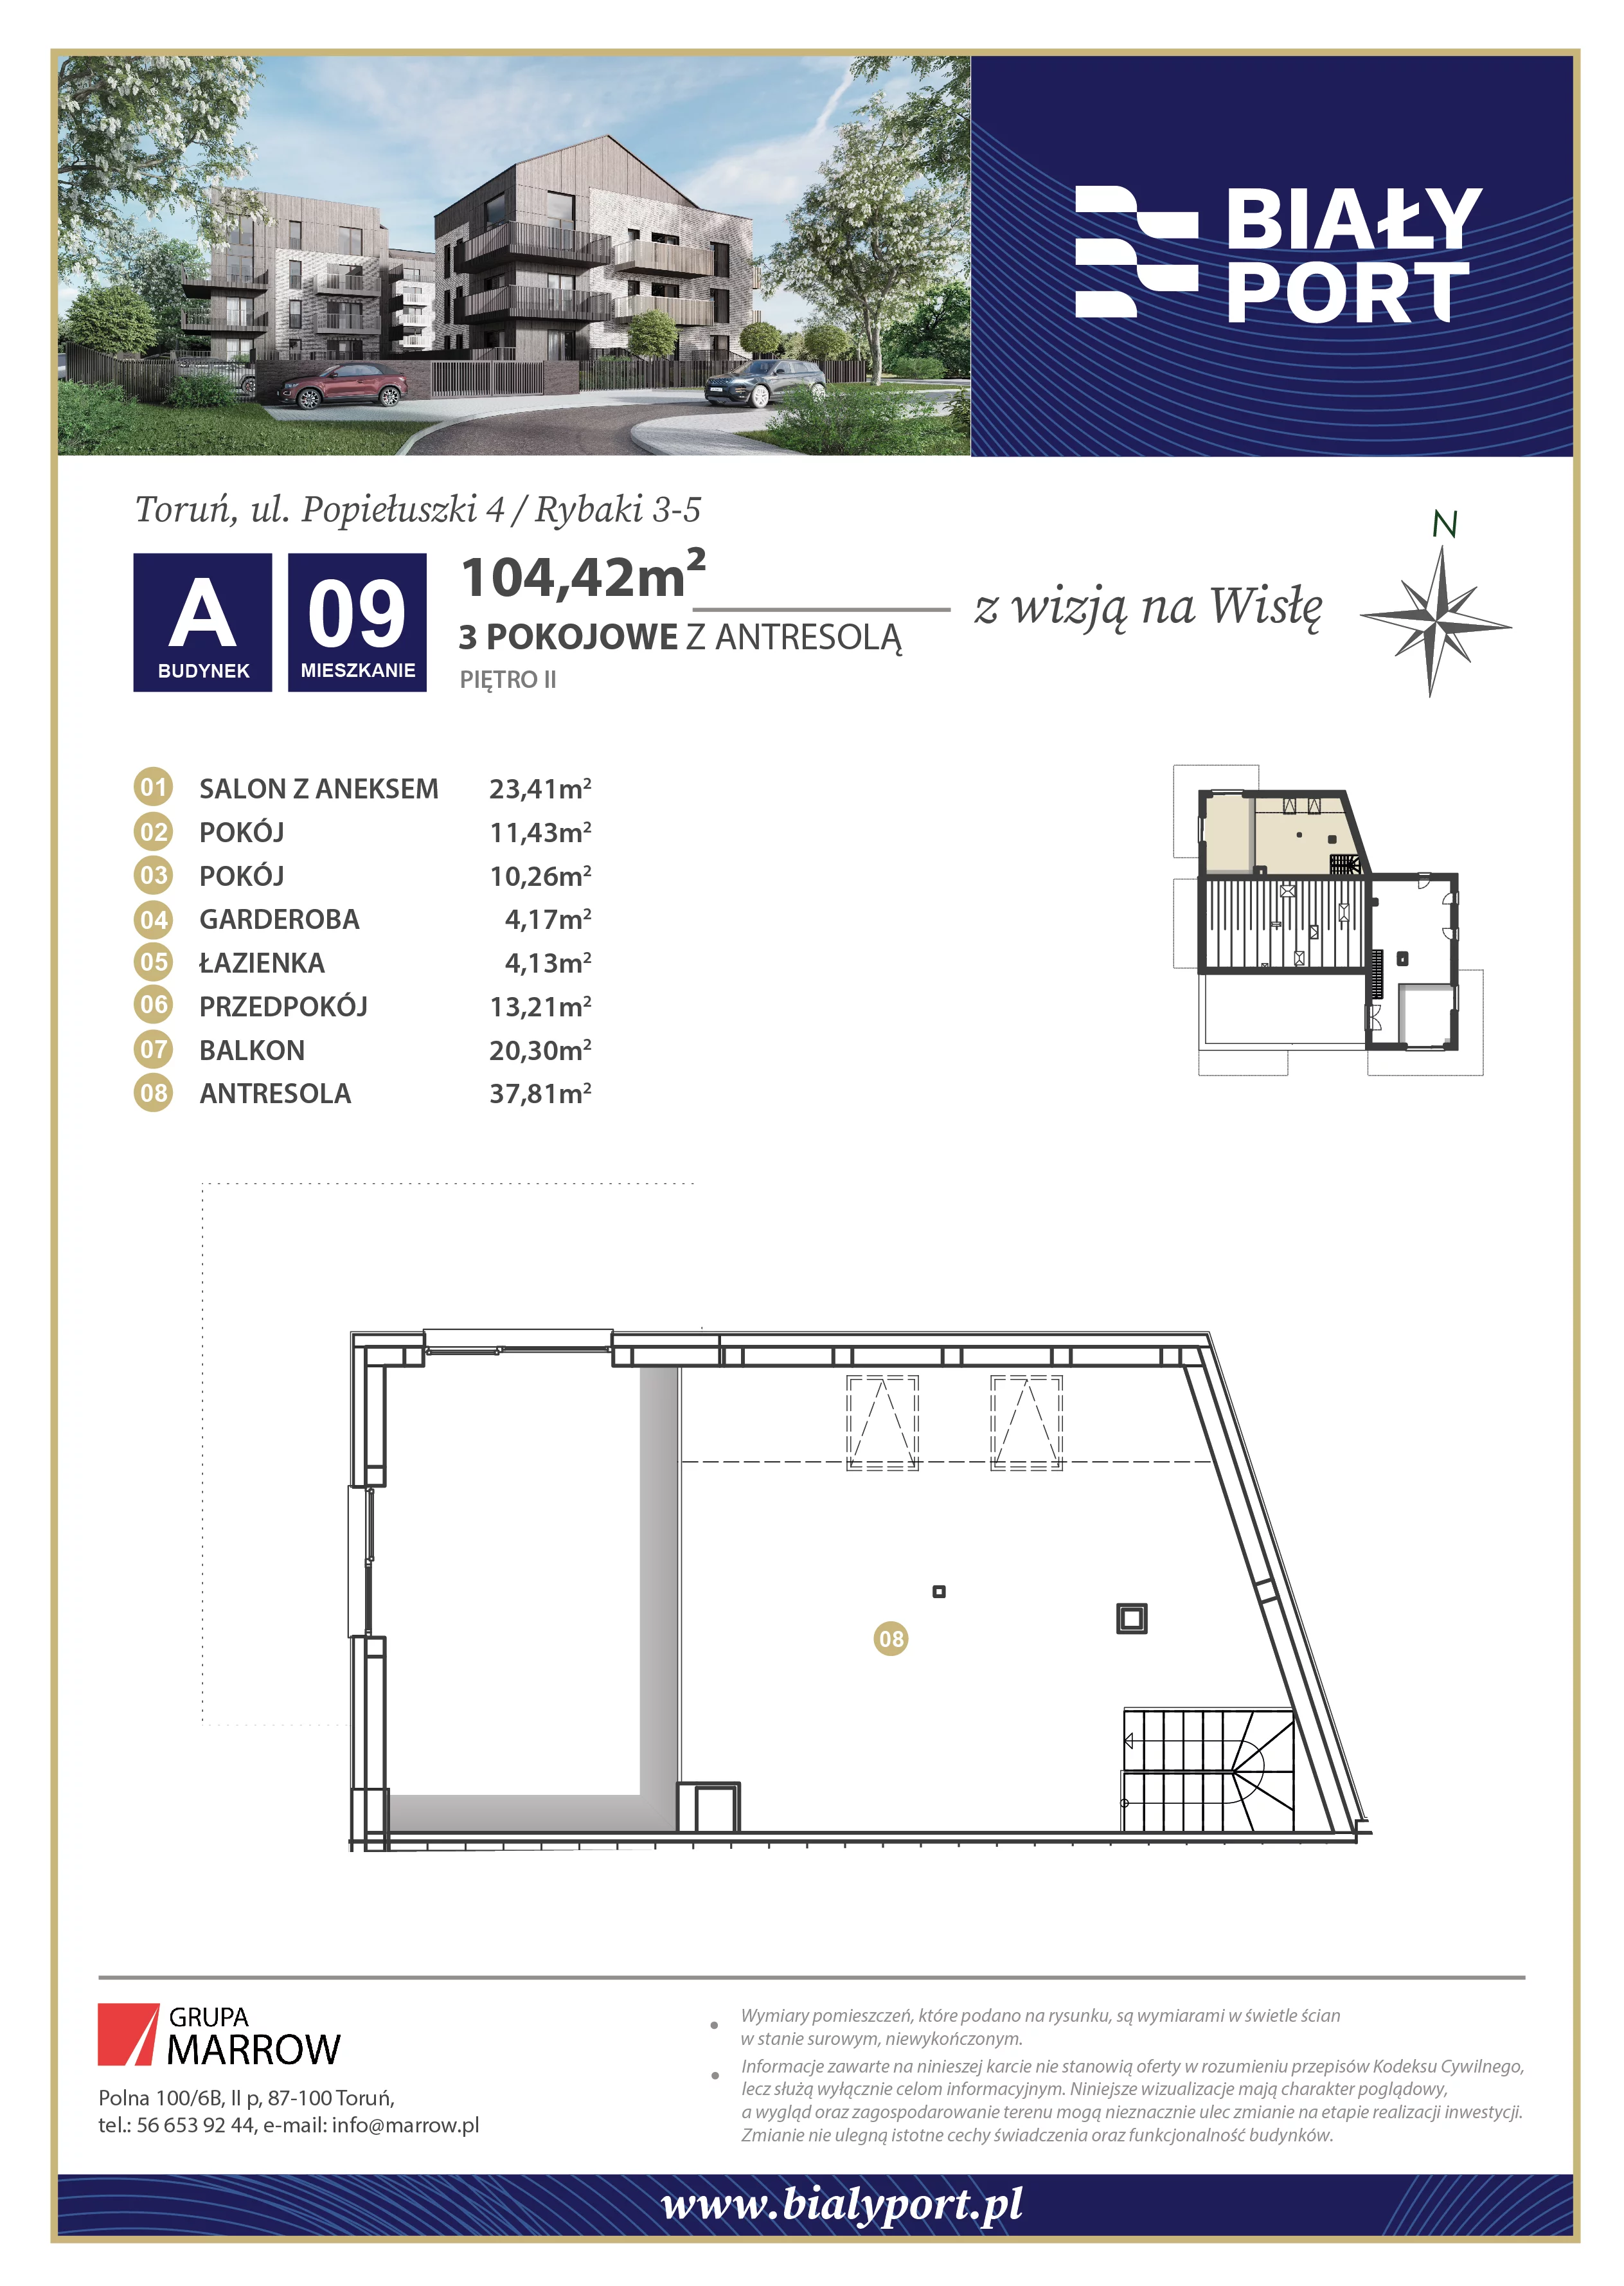 Mieszkanie 104,42 m², piętro 2, oferta nr 9, Biały Port, Toruń, Rybaki, ul. Popiełuszki 4